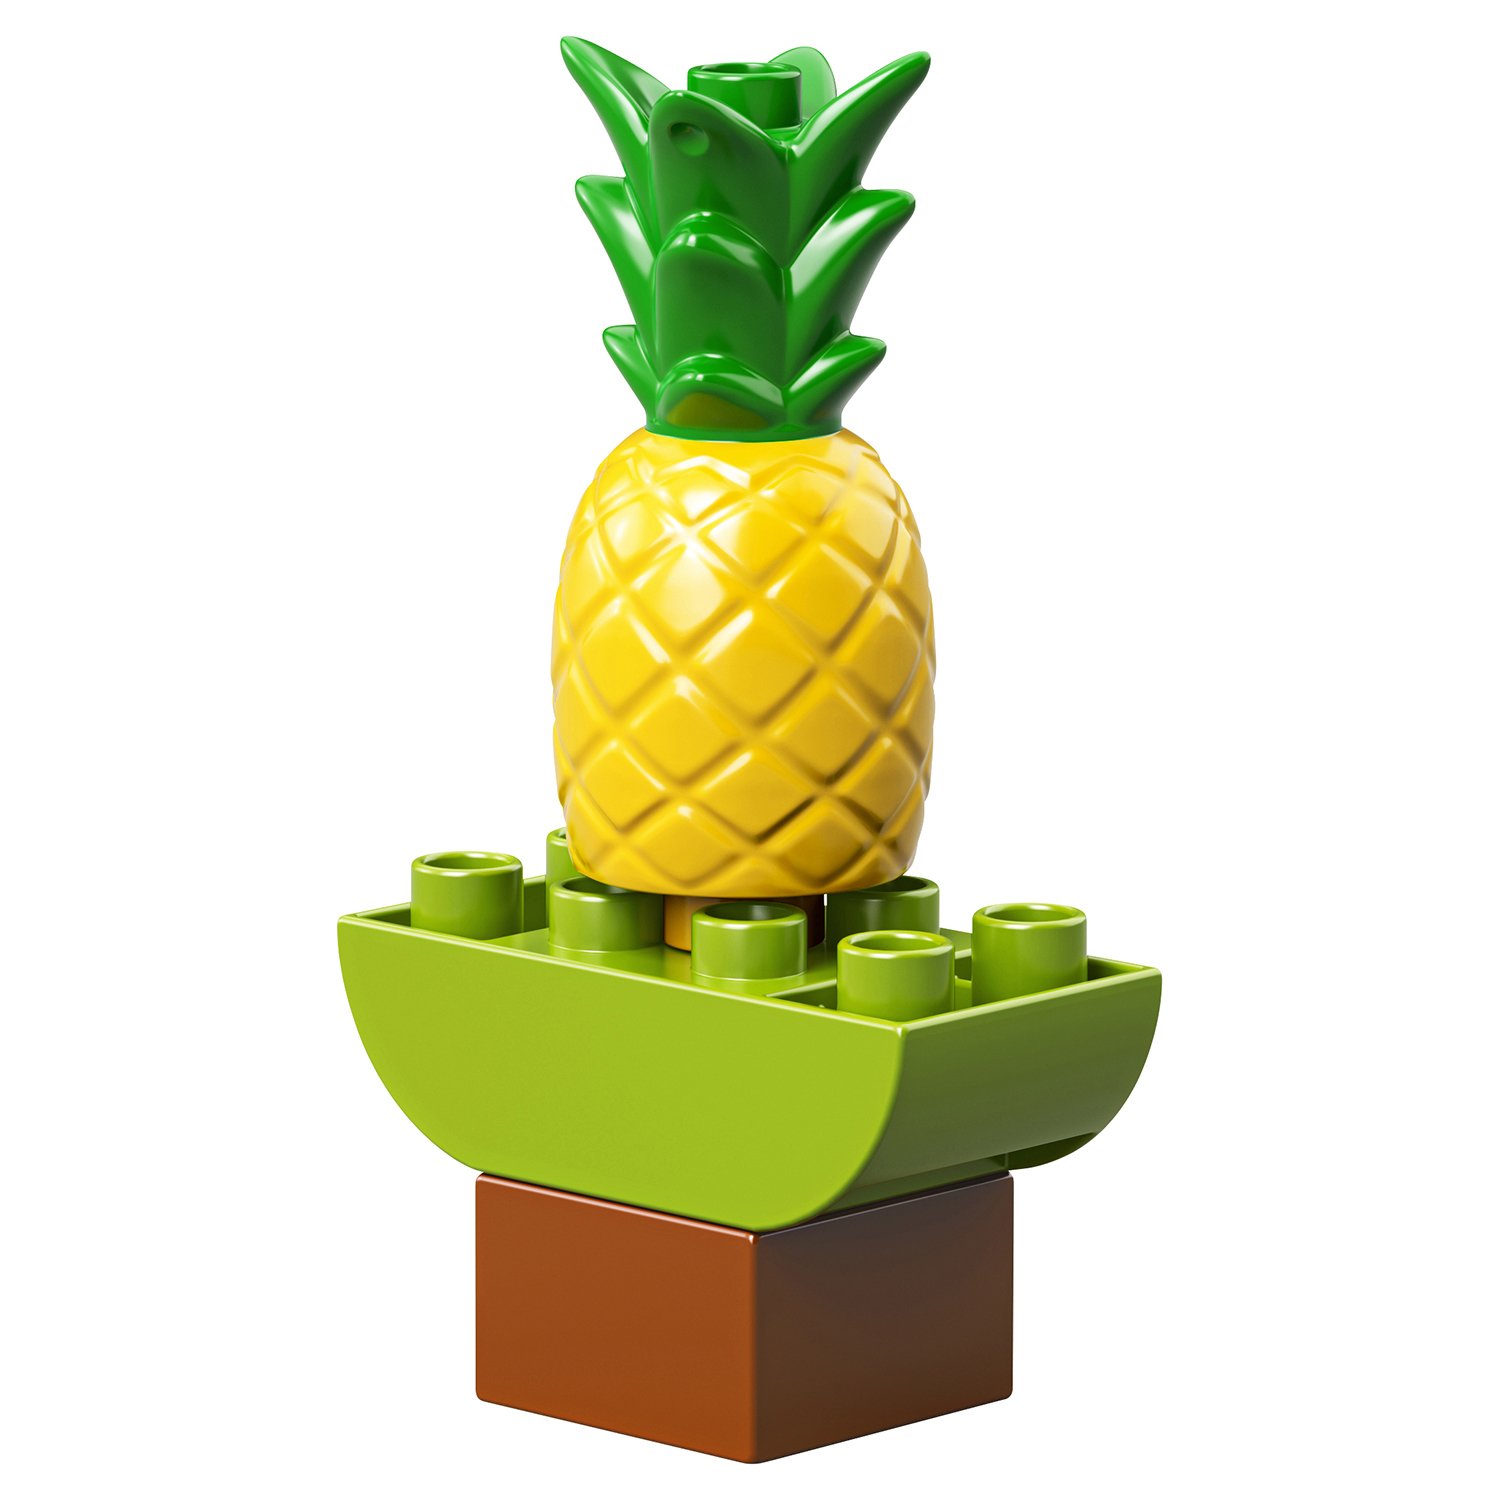 Конструктор LEGO Duplo «Тропический остров» 10906